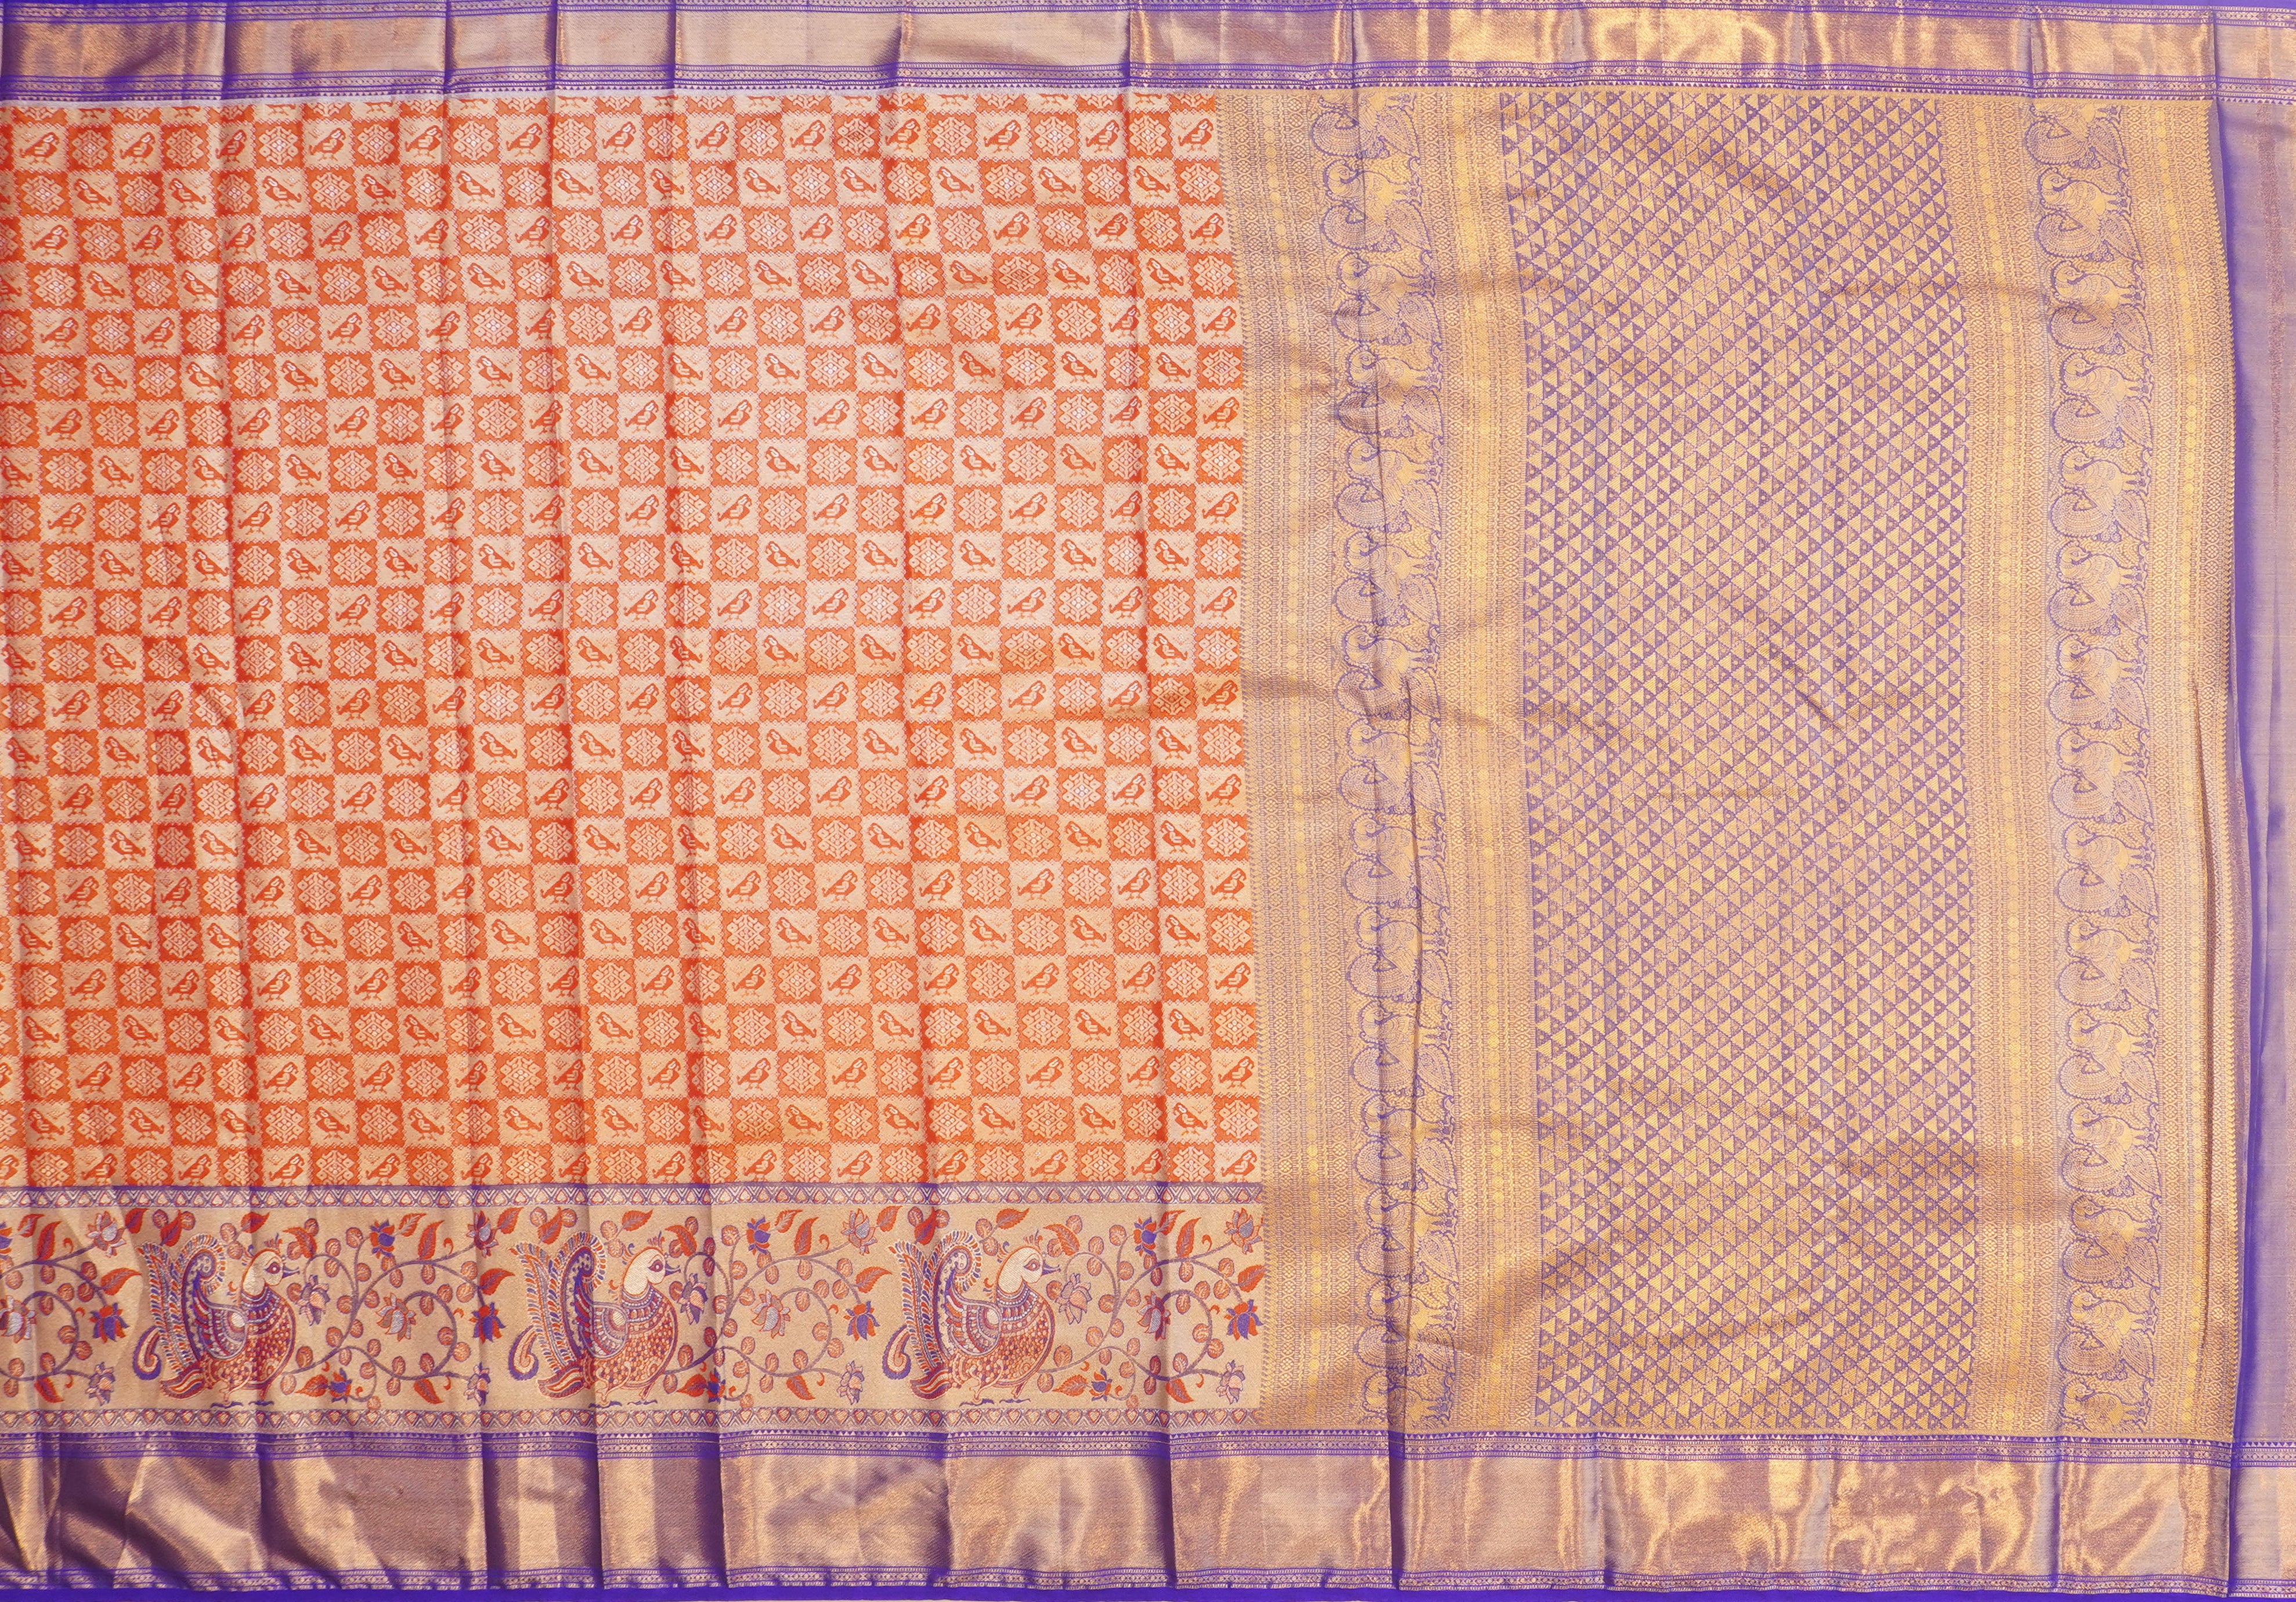 JSB- 9631 | Red & Blue Kanchi Tissue Pattu Saree